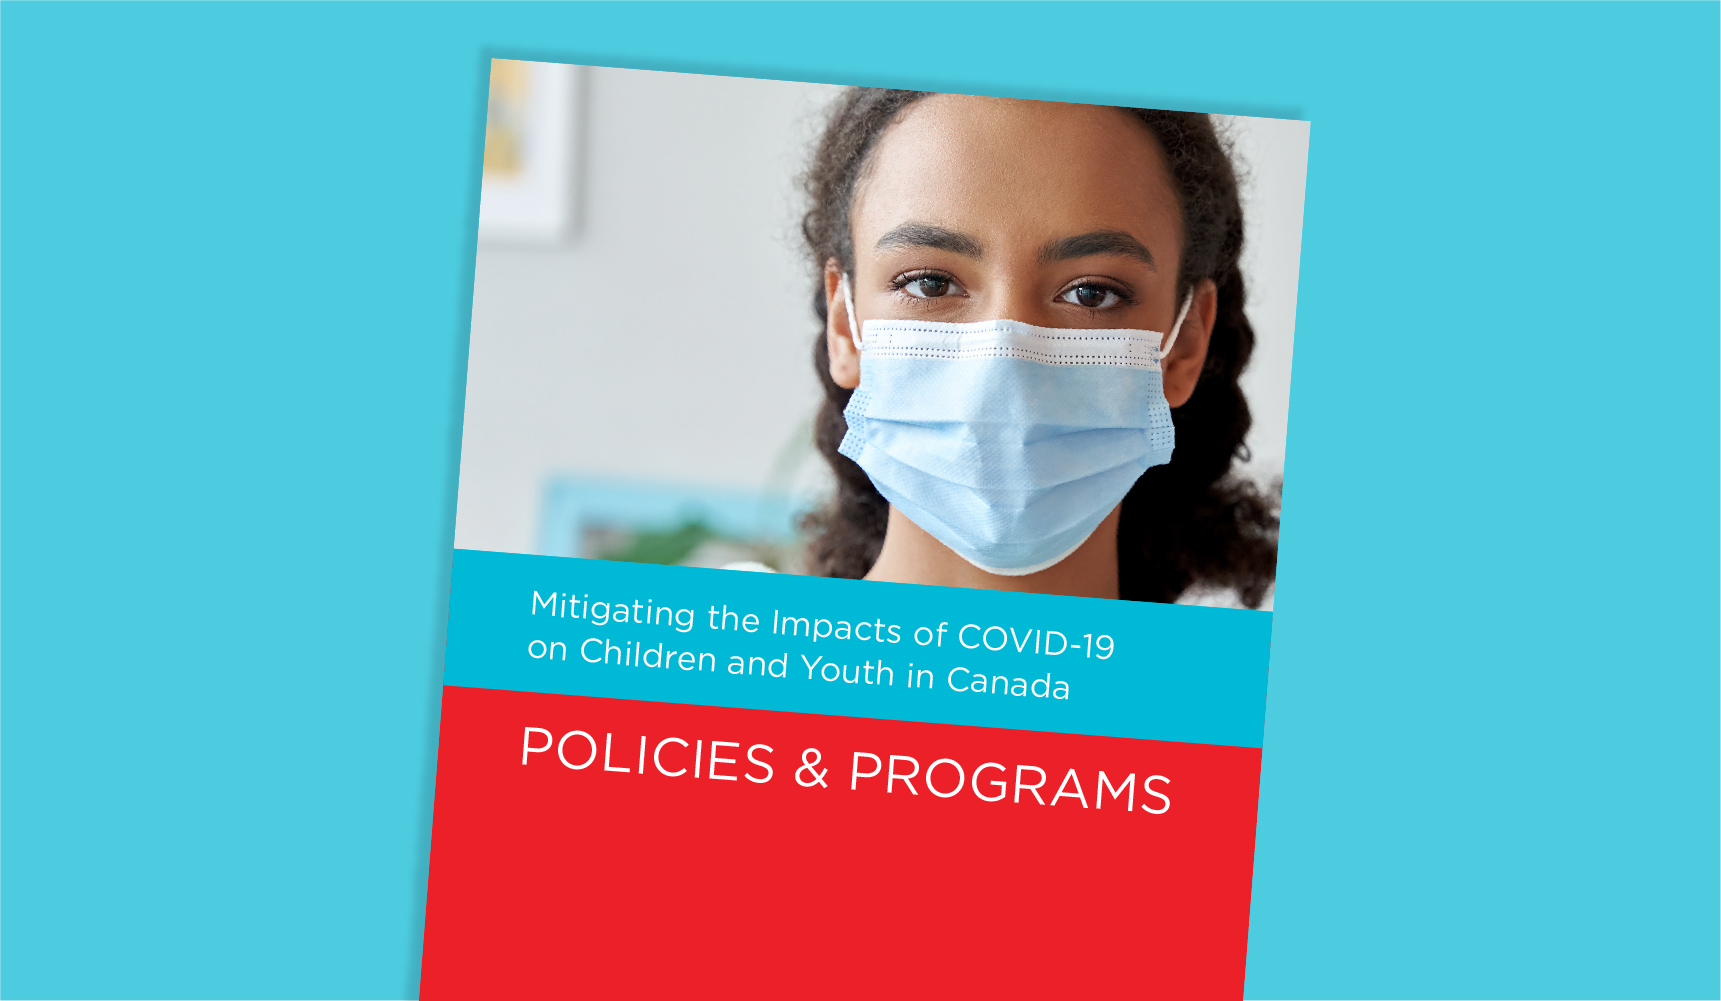 Nouvelle ressource de politique et de programme pour atténuer les impacts de COVID-19 sur les enfants